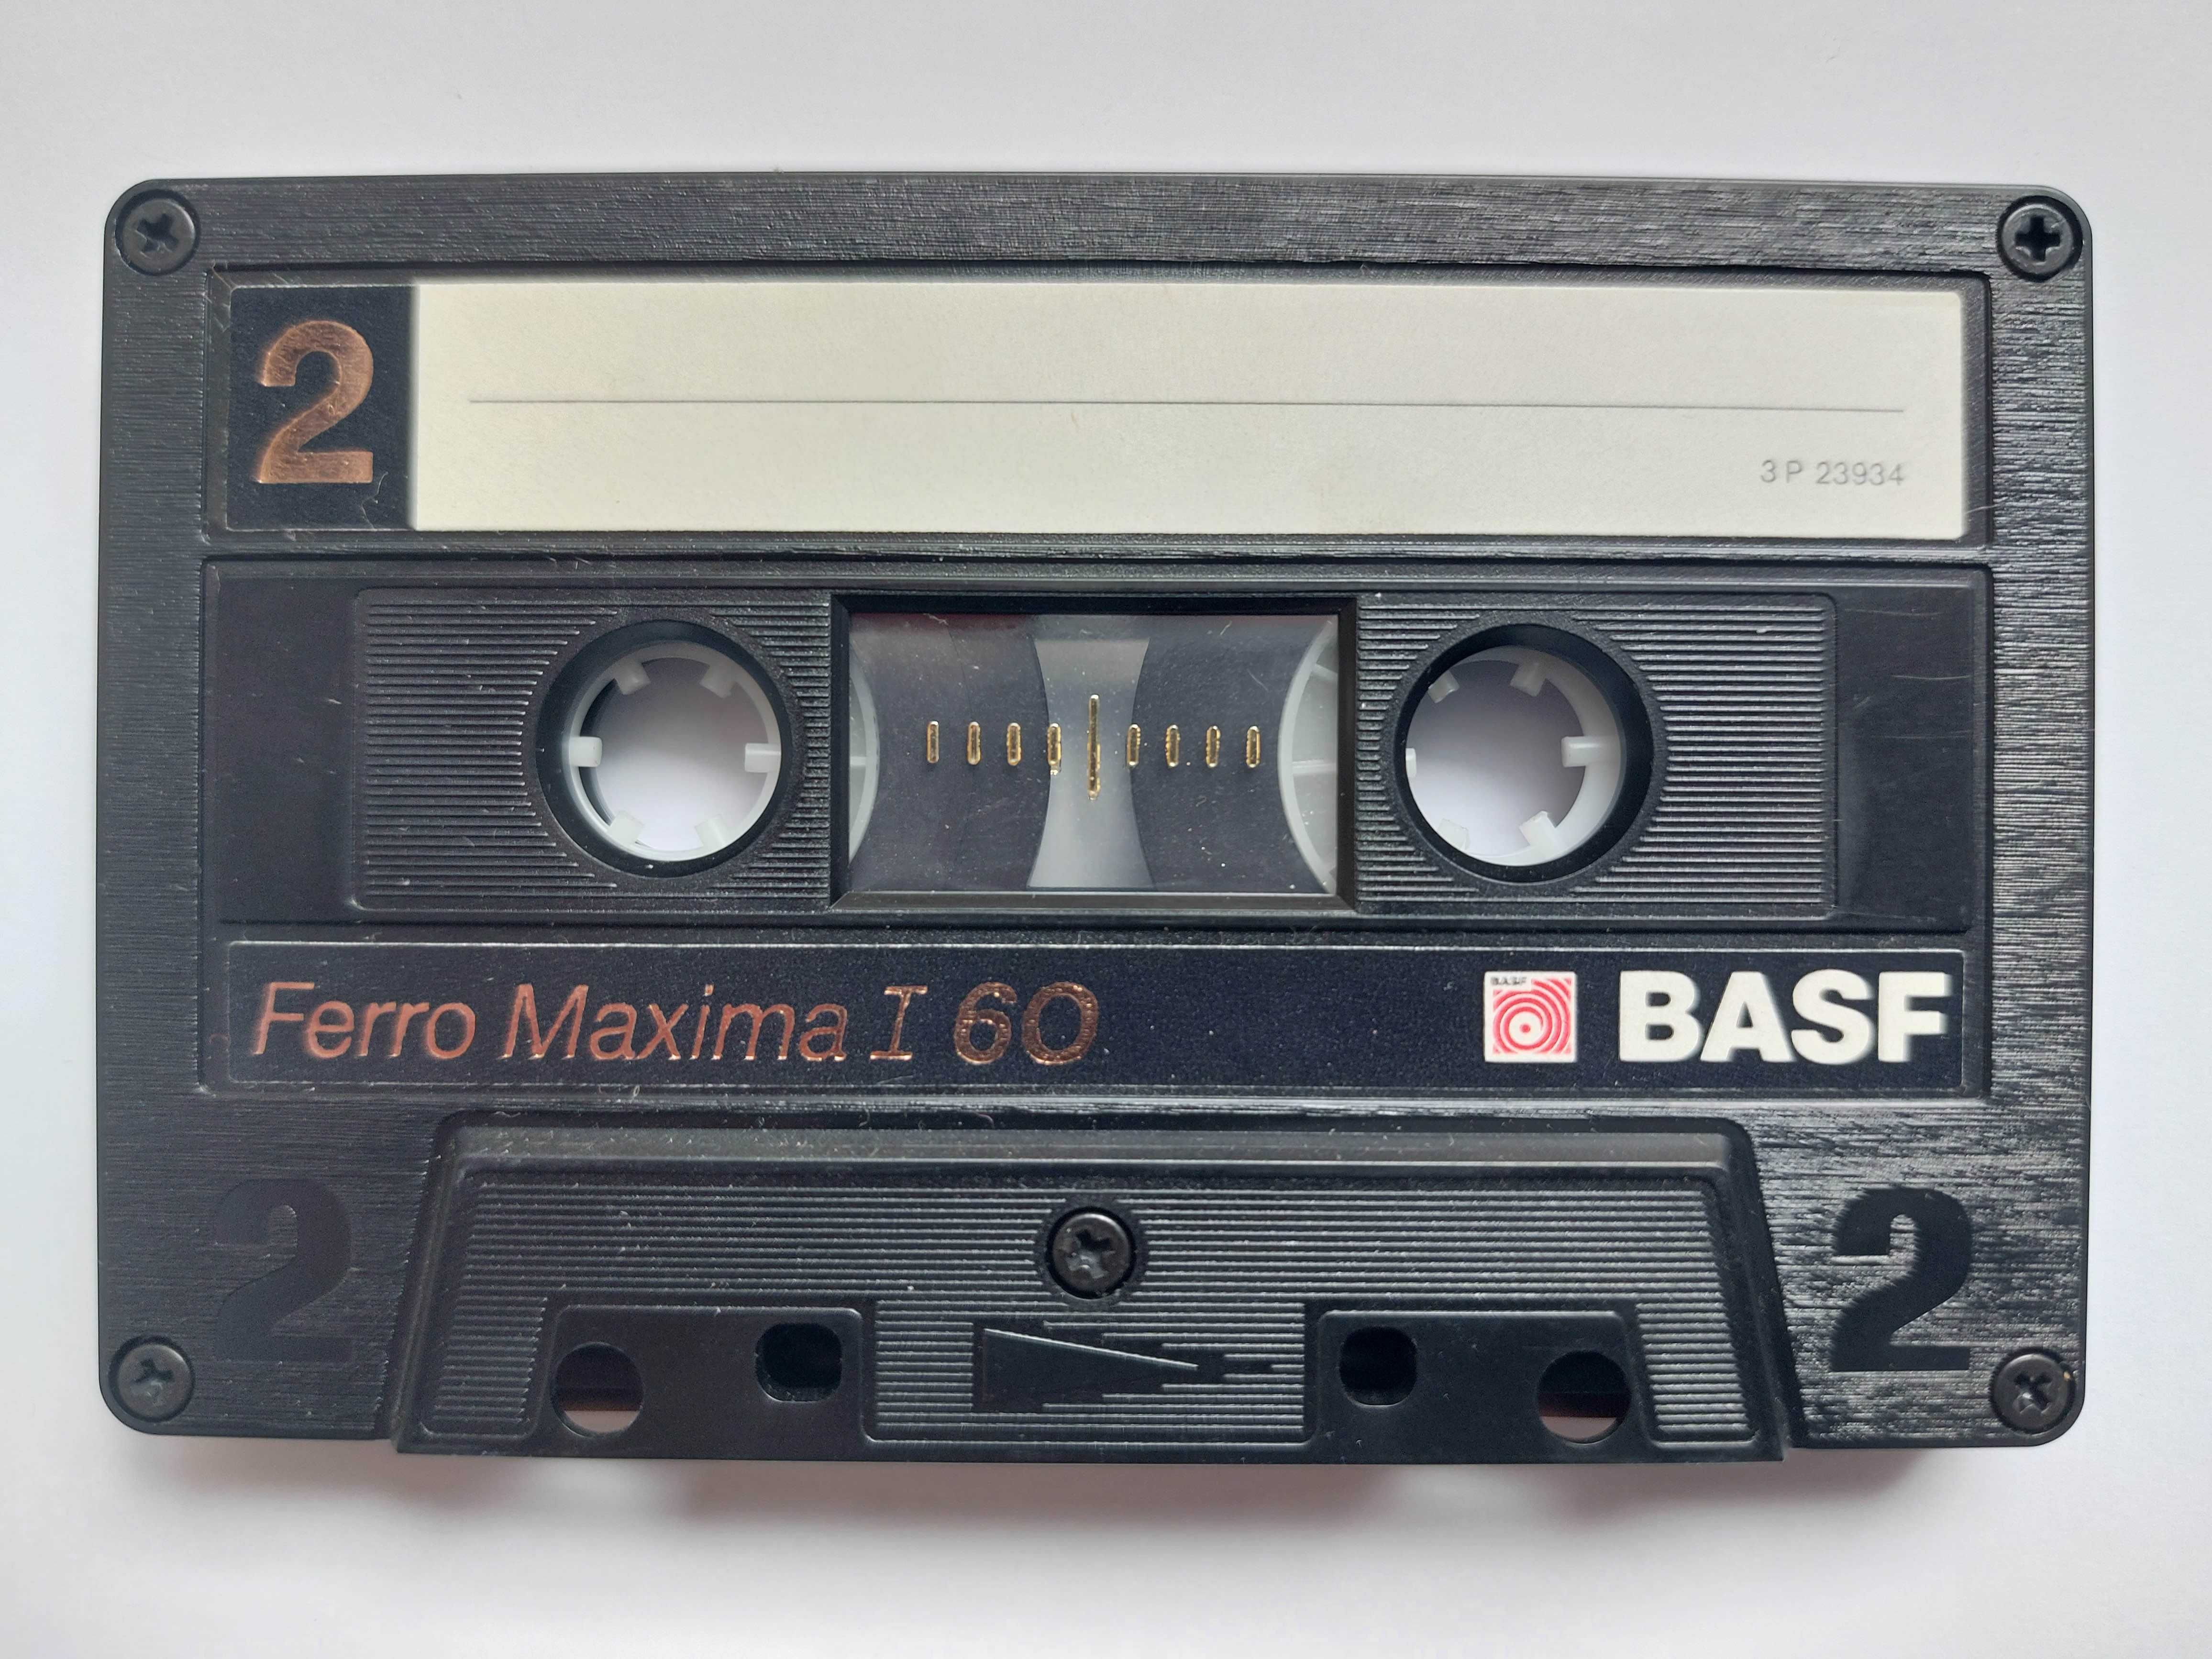 kasety audio używane do powtórnego nagrania - cena za zestaw 17 sztuk